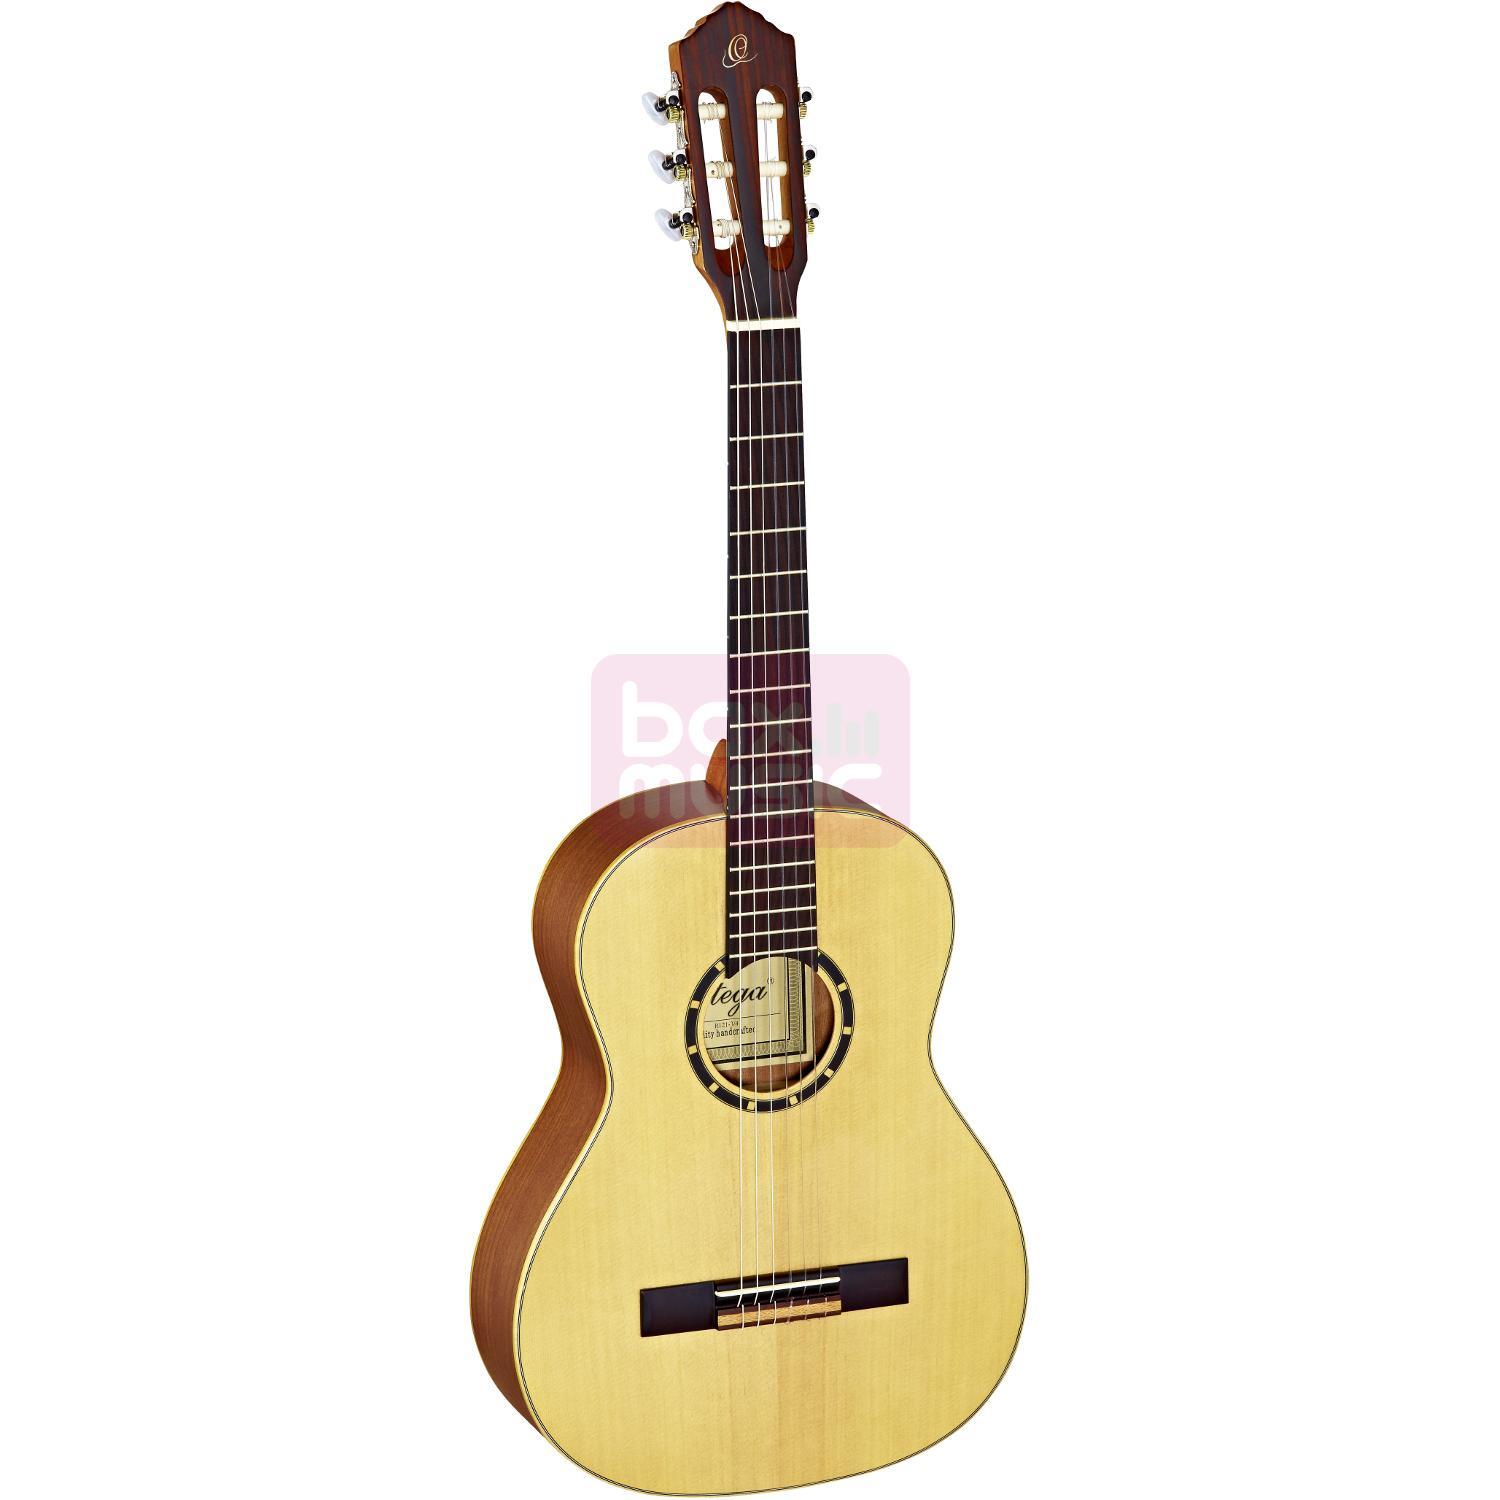 Ortega R121-3/4 klassieke gitaar naturel met gigbag